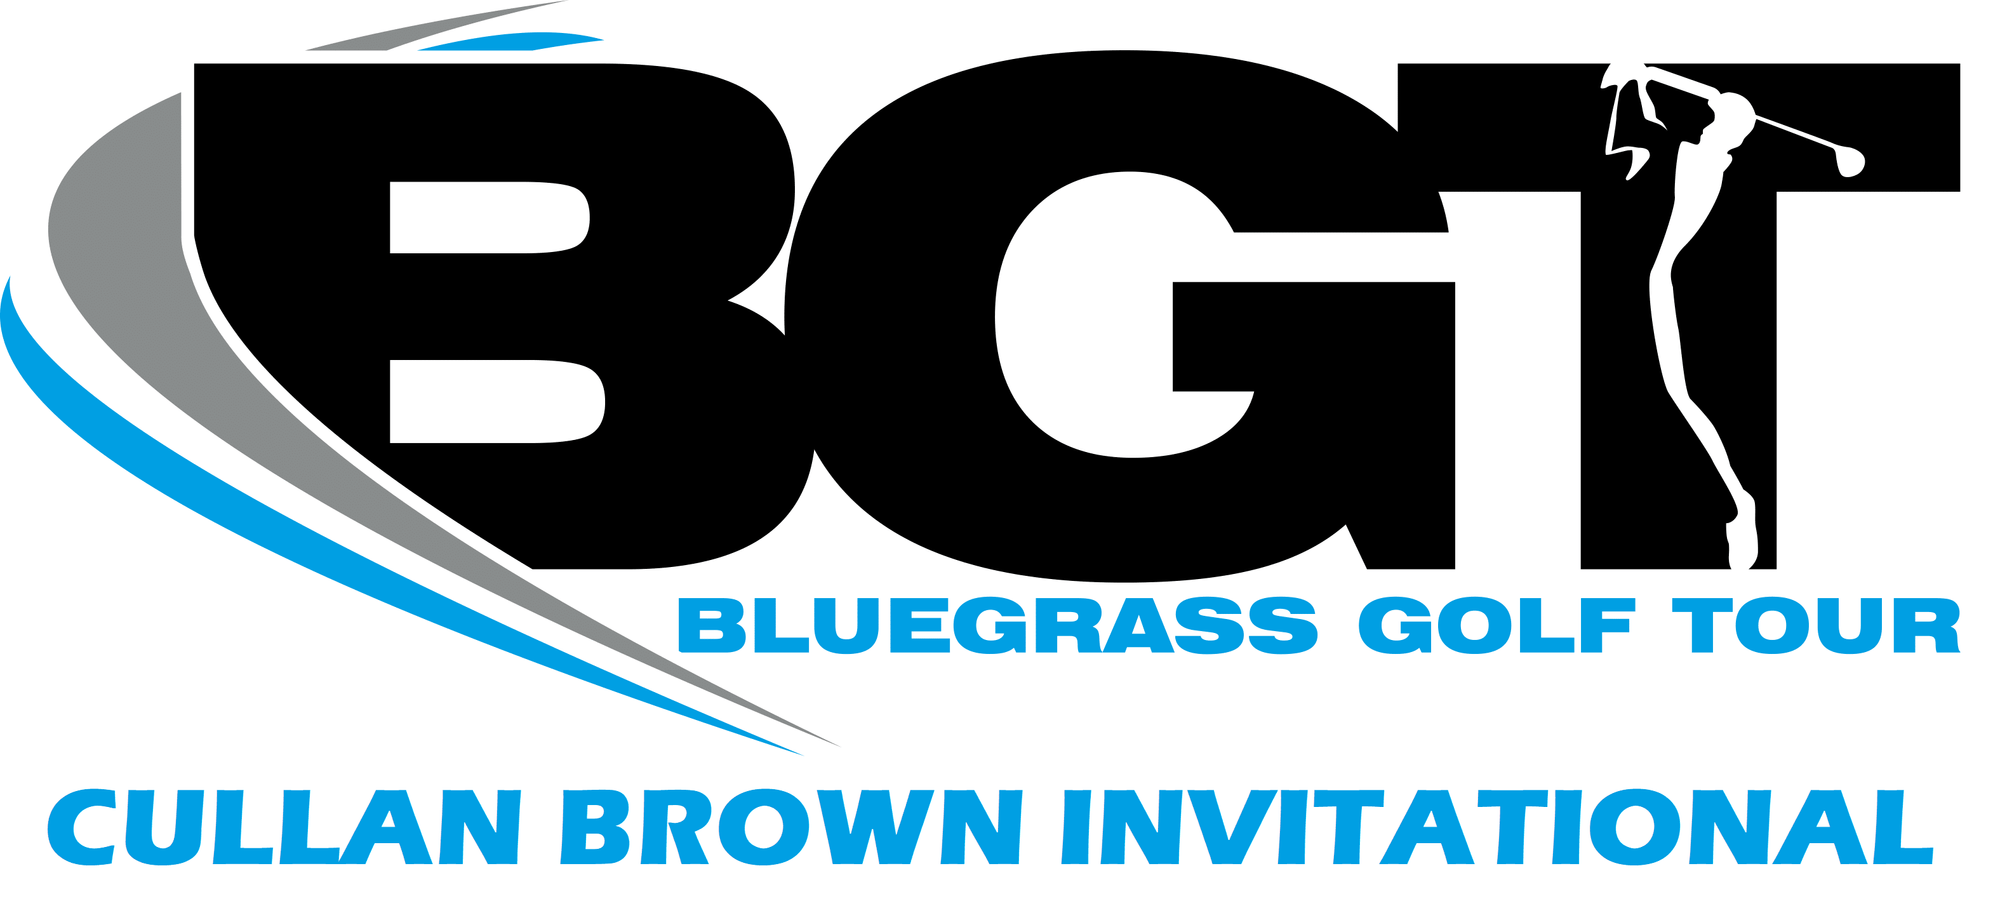 Bluegrass Golf Tour